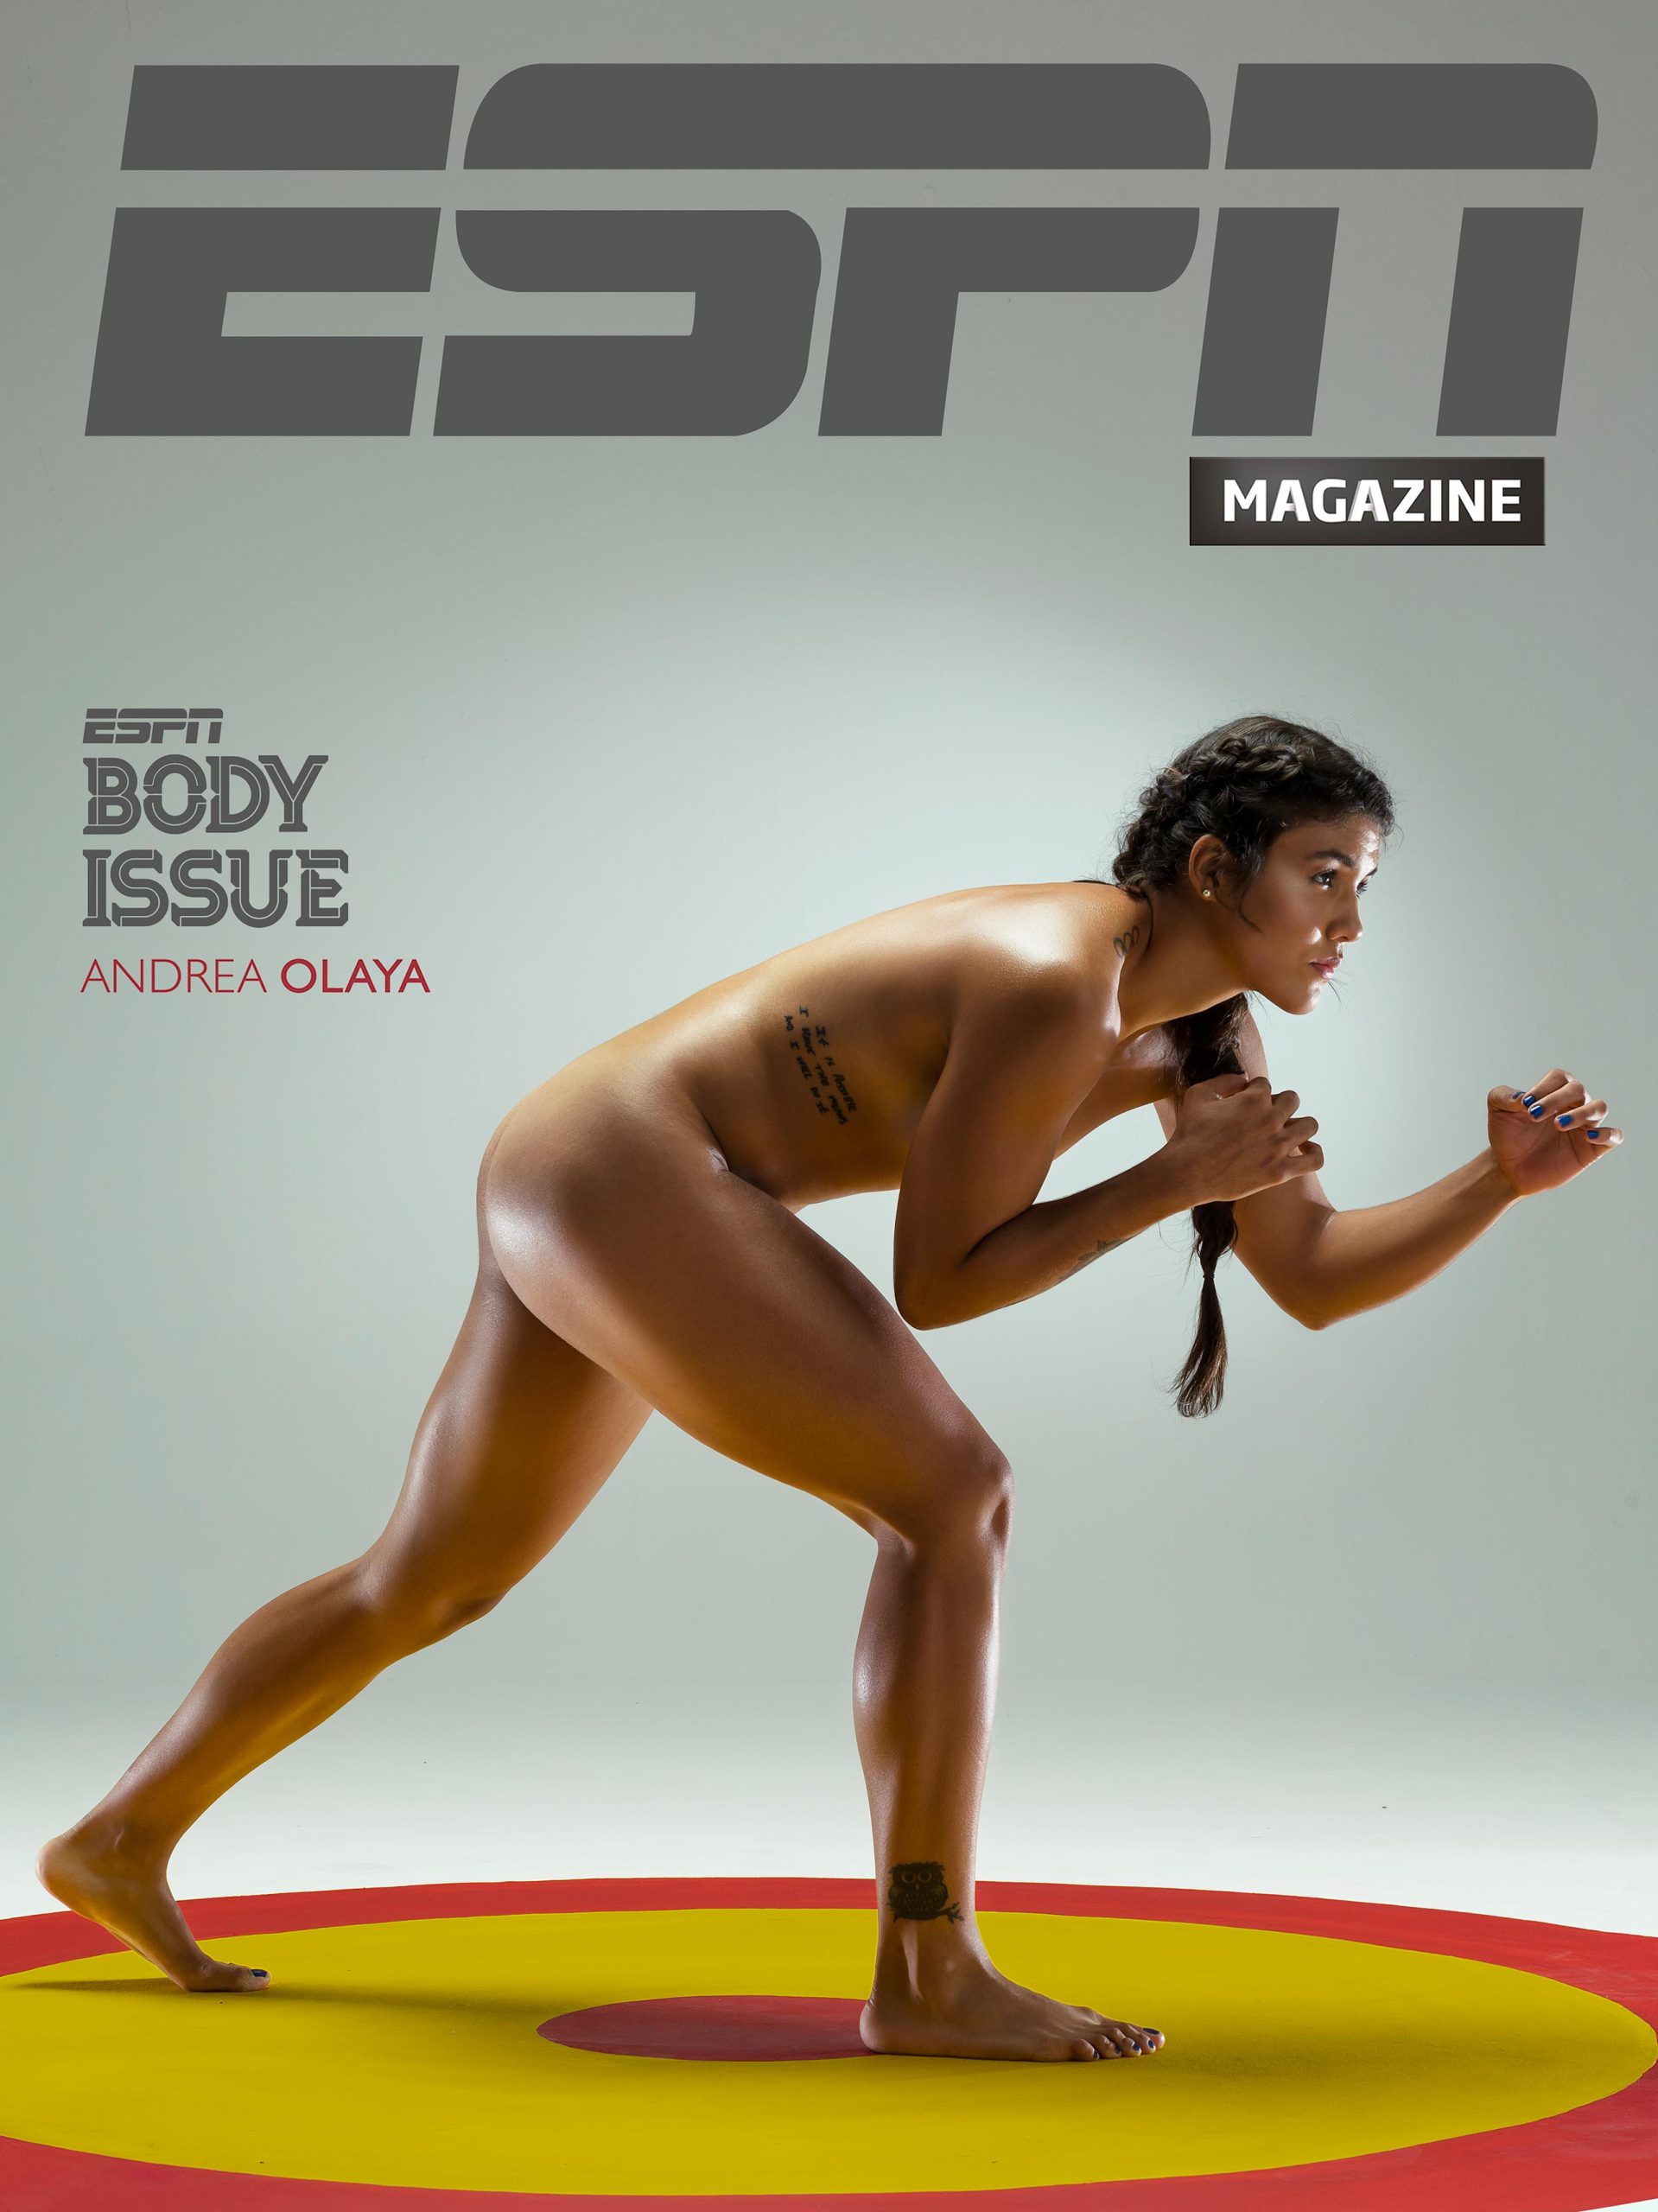 Deportista Colombiano, Clavadista Orlando Duque posando desnudo para la revista digital Body Issue de ESPN